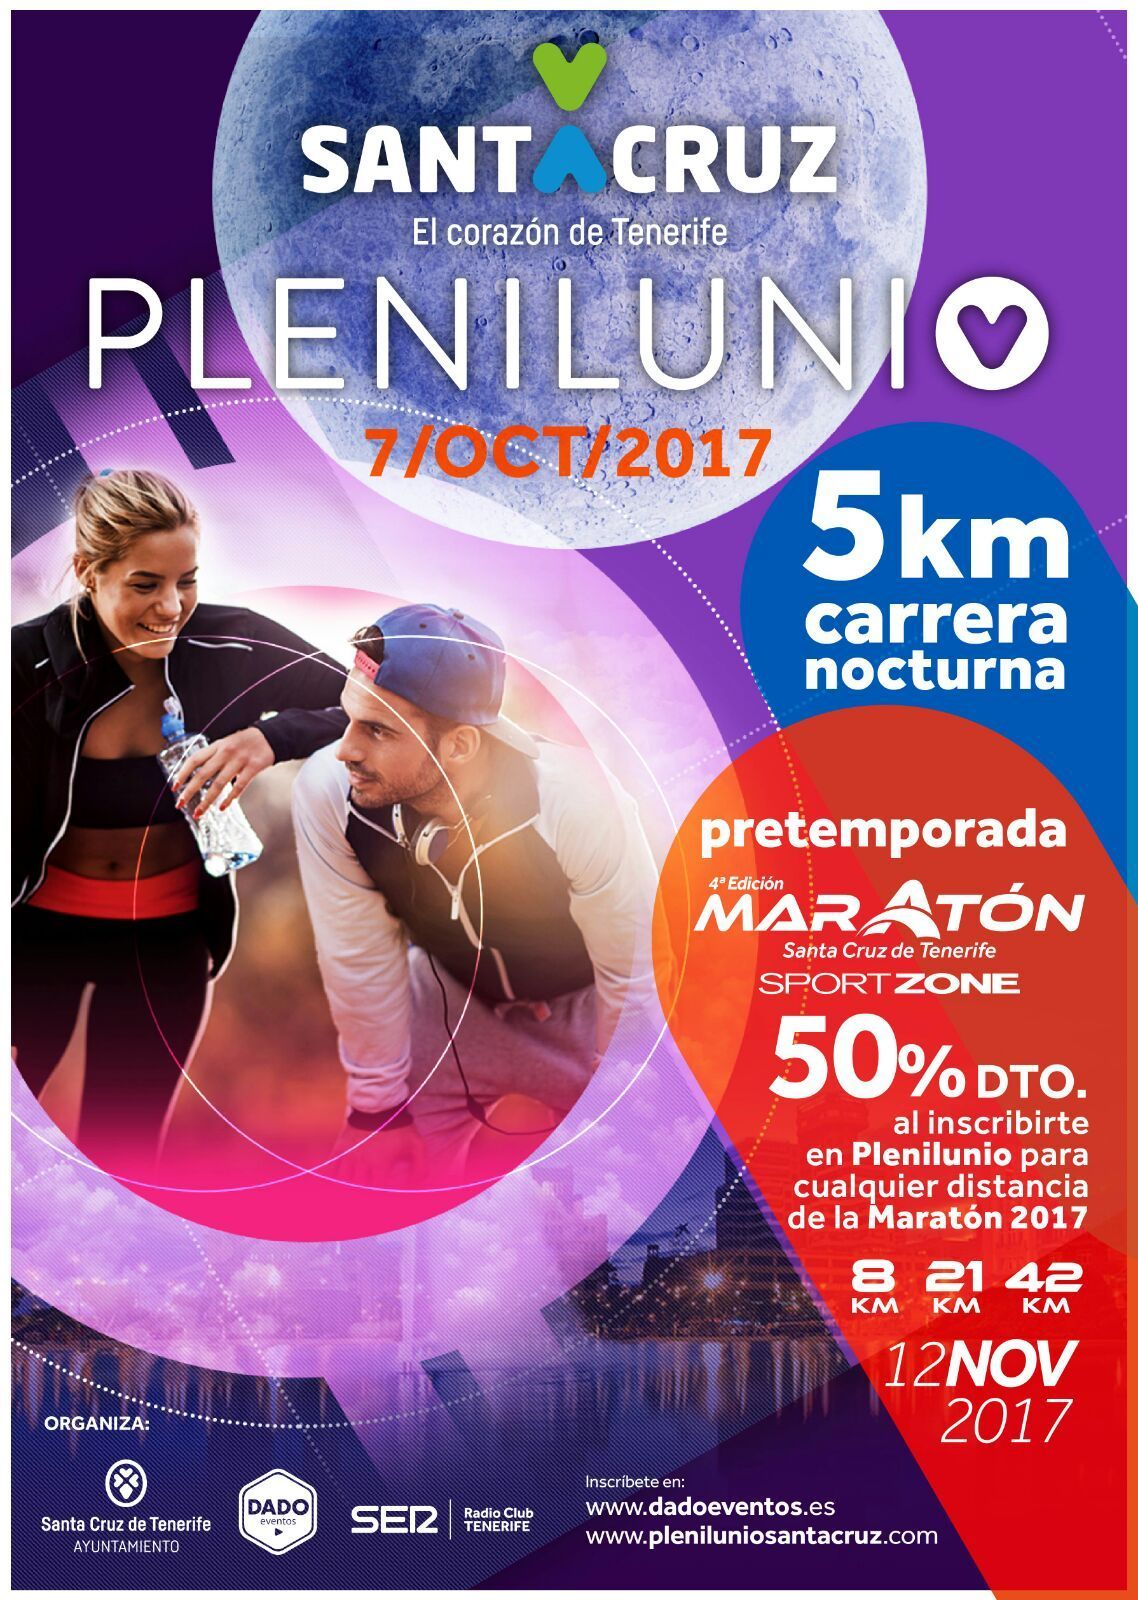 Carrera Nocturna Plenilunio 2017